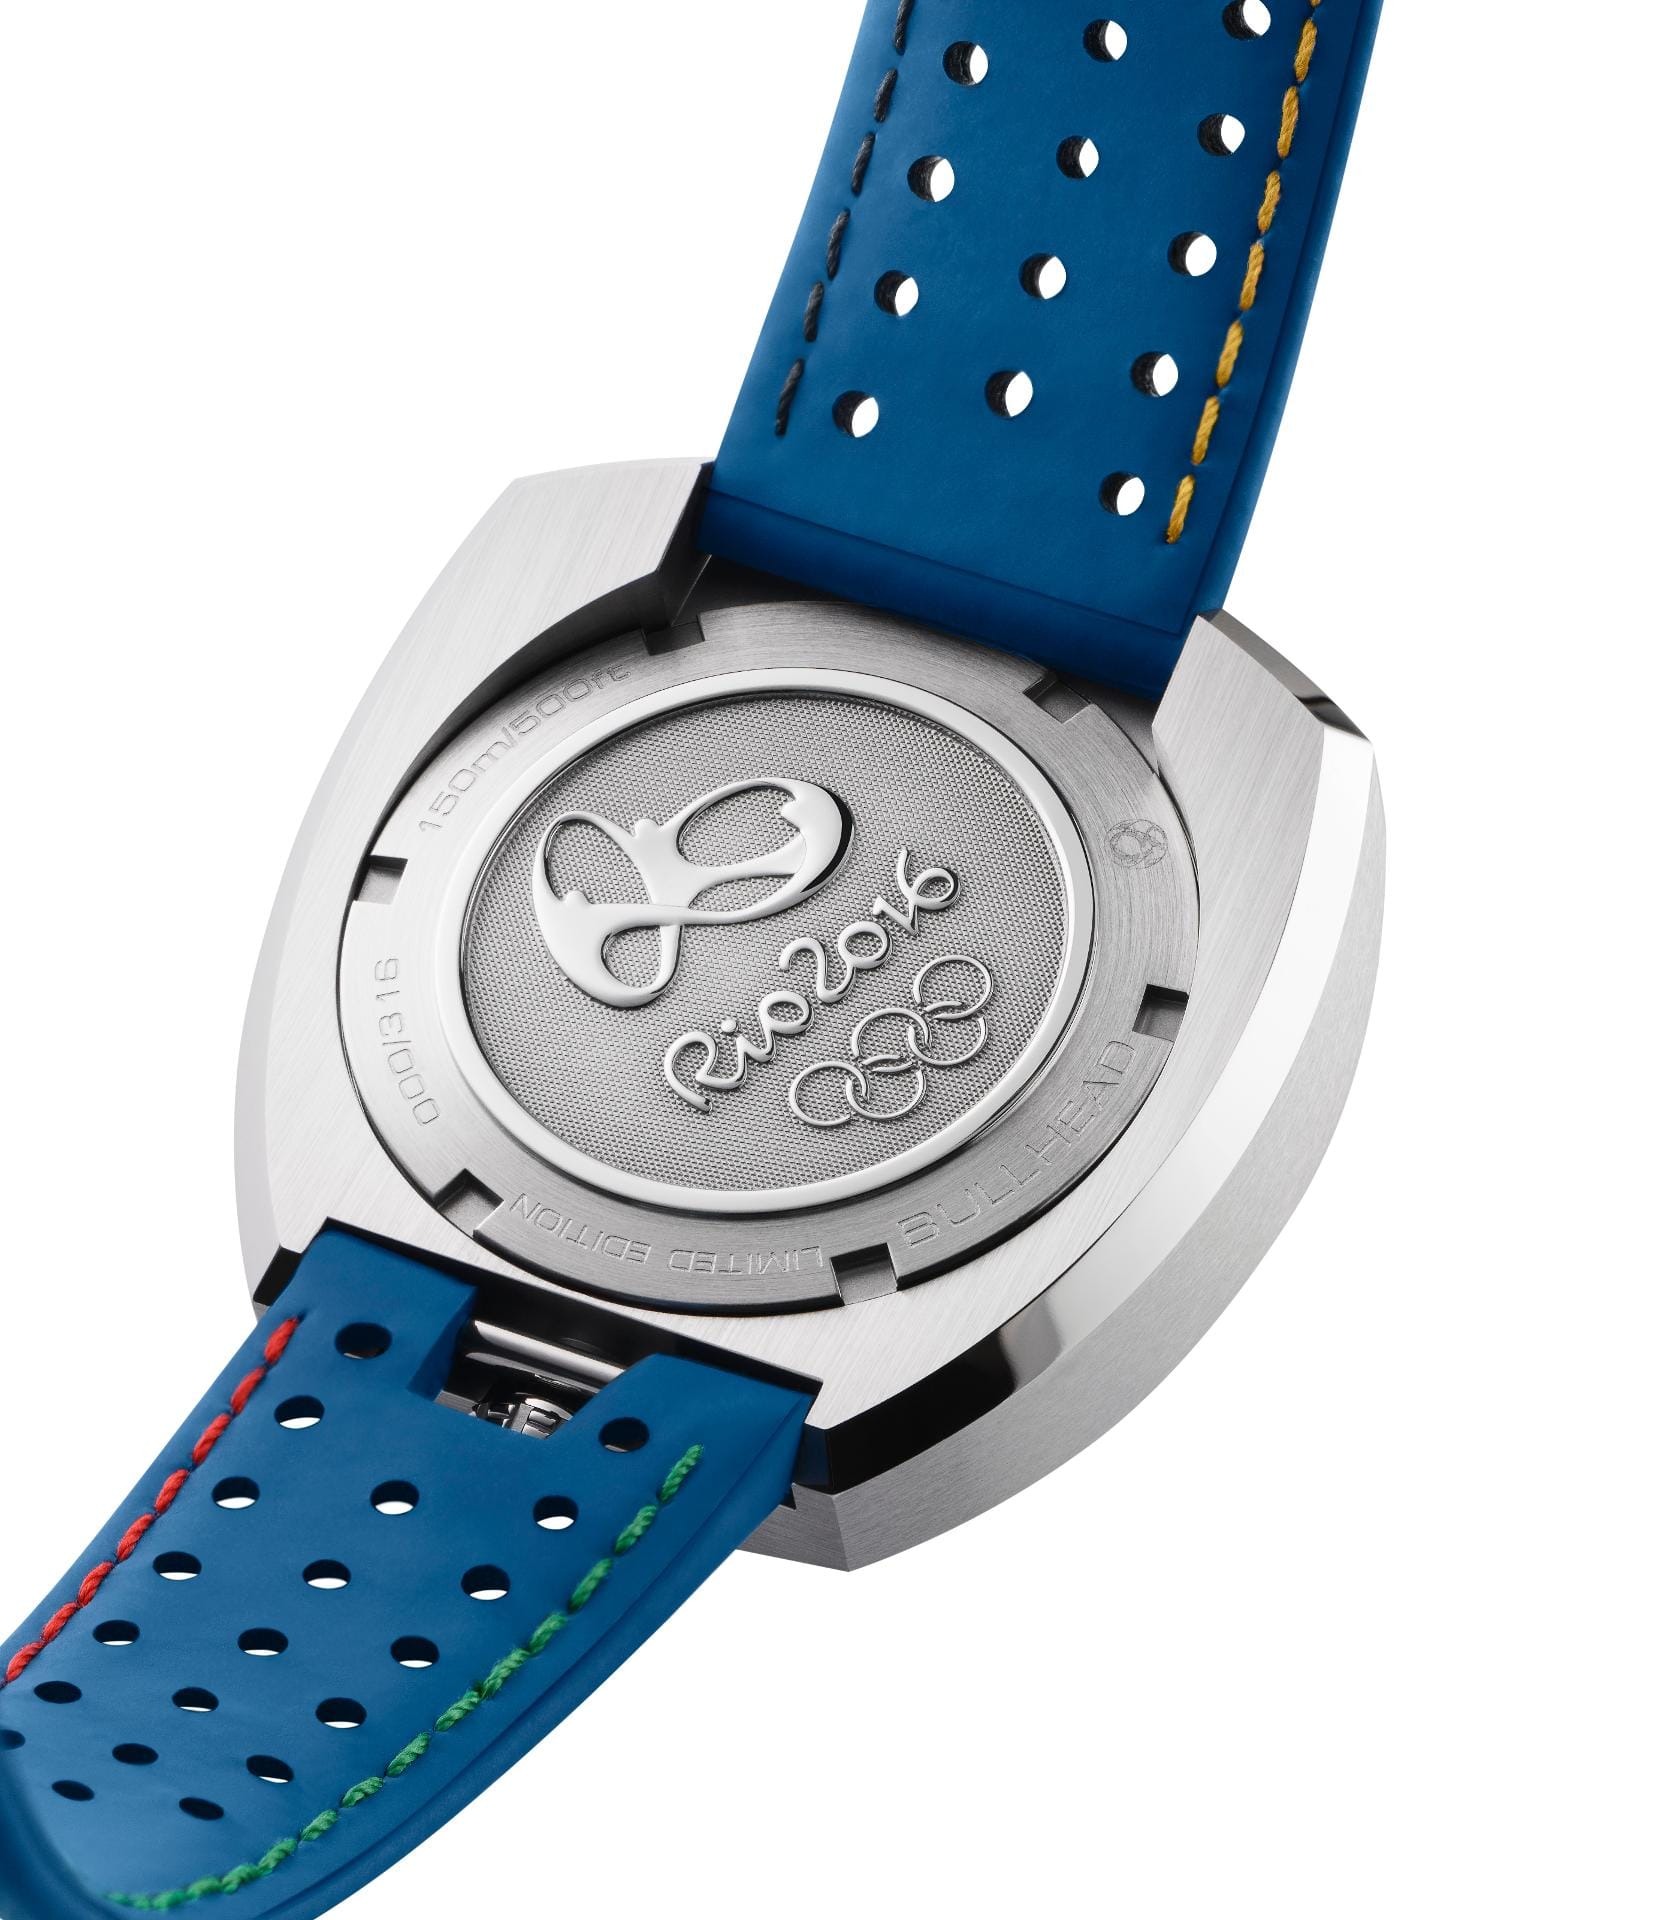 Zu den Olympischen Spielen in Rio bieten der Uhrenhersteller drei Uhren an. Am Boden der Uhr befindet sich das Logo der Spiele.